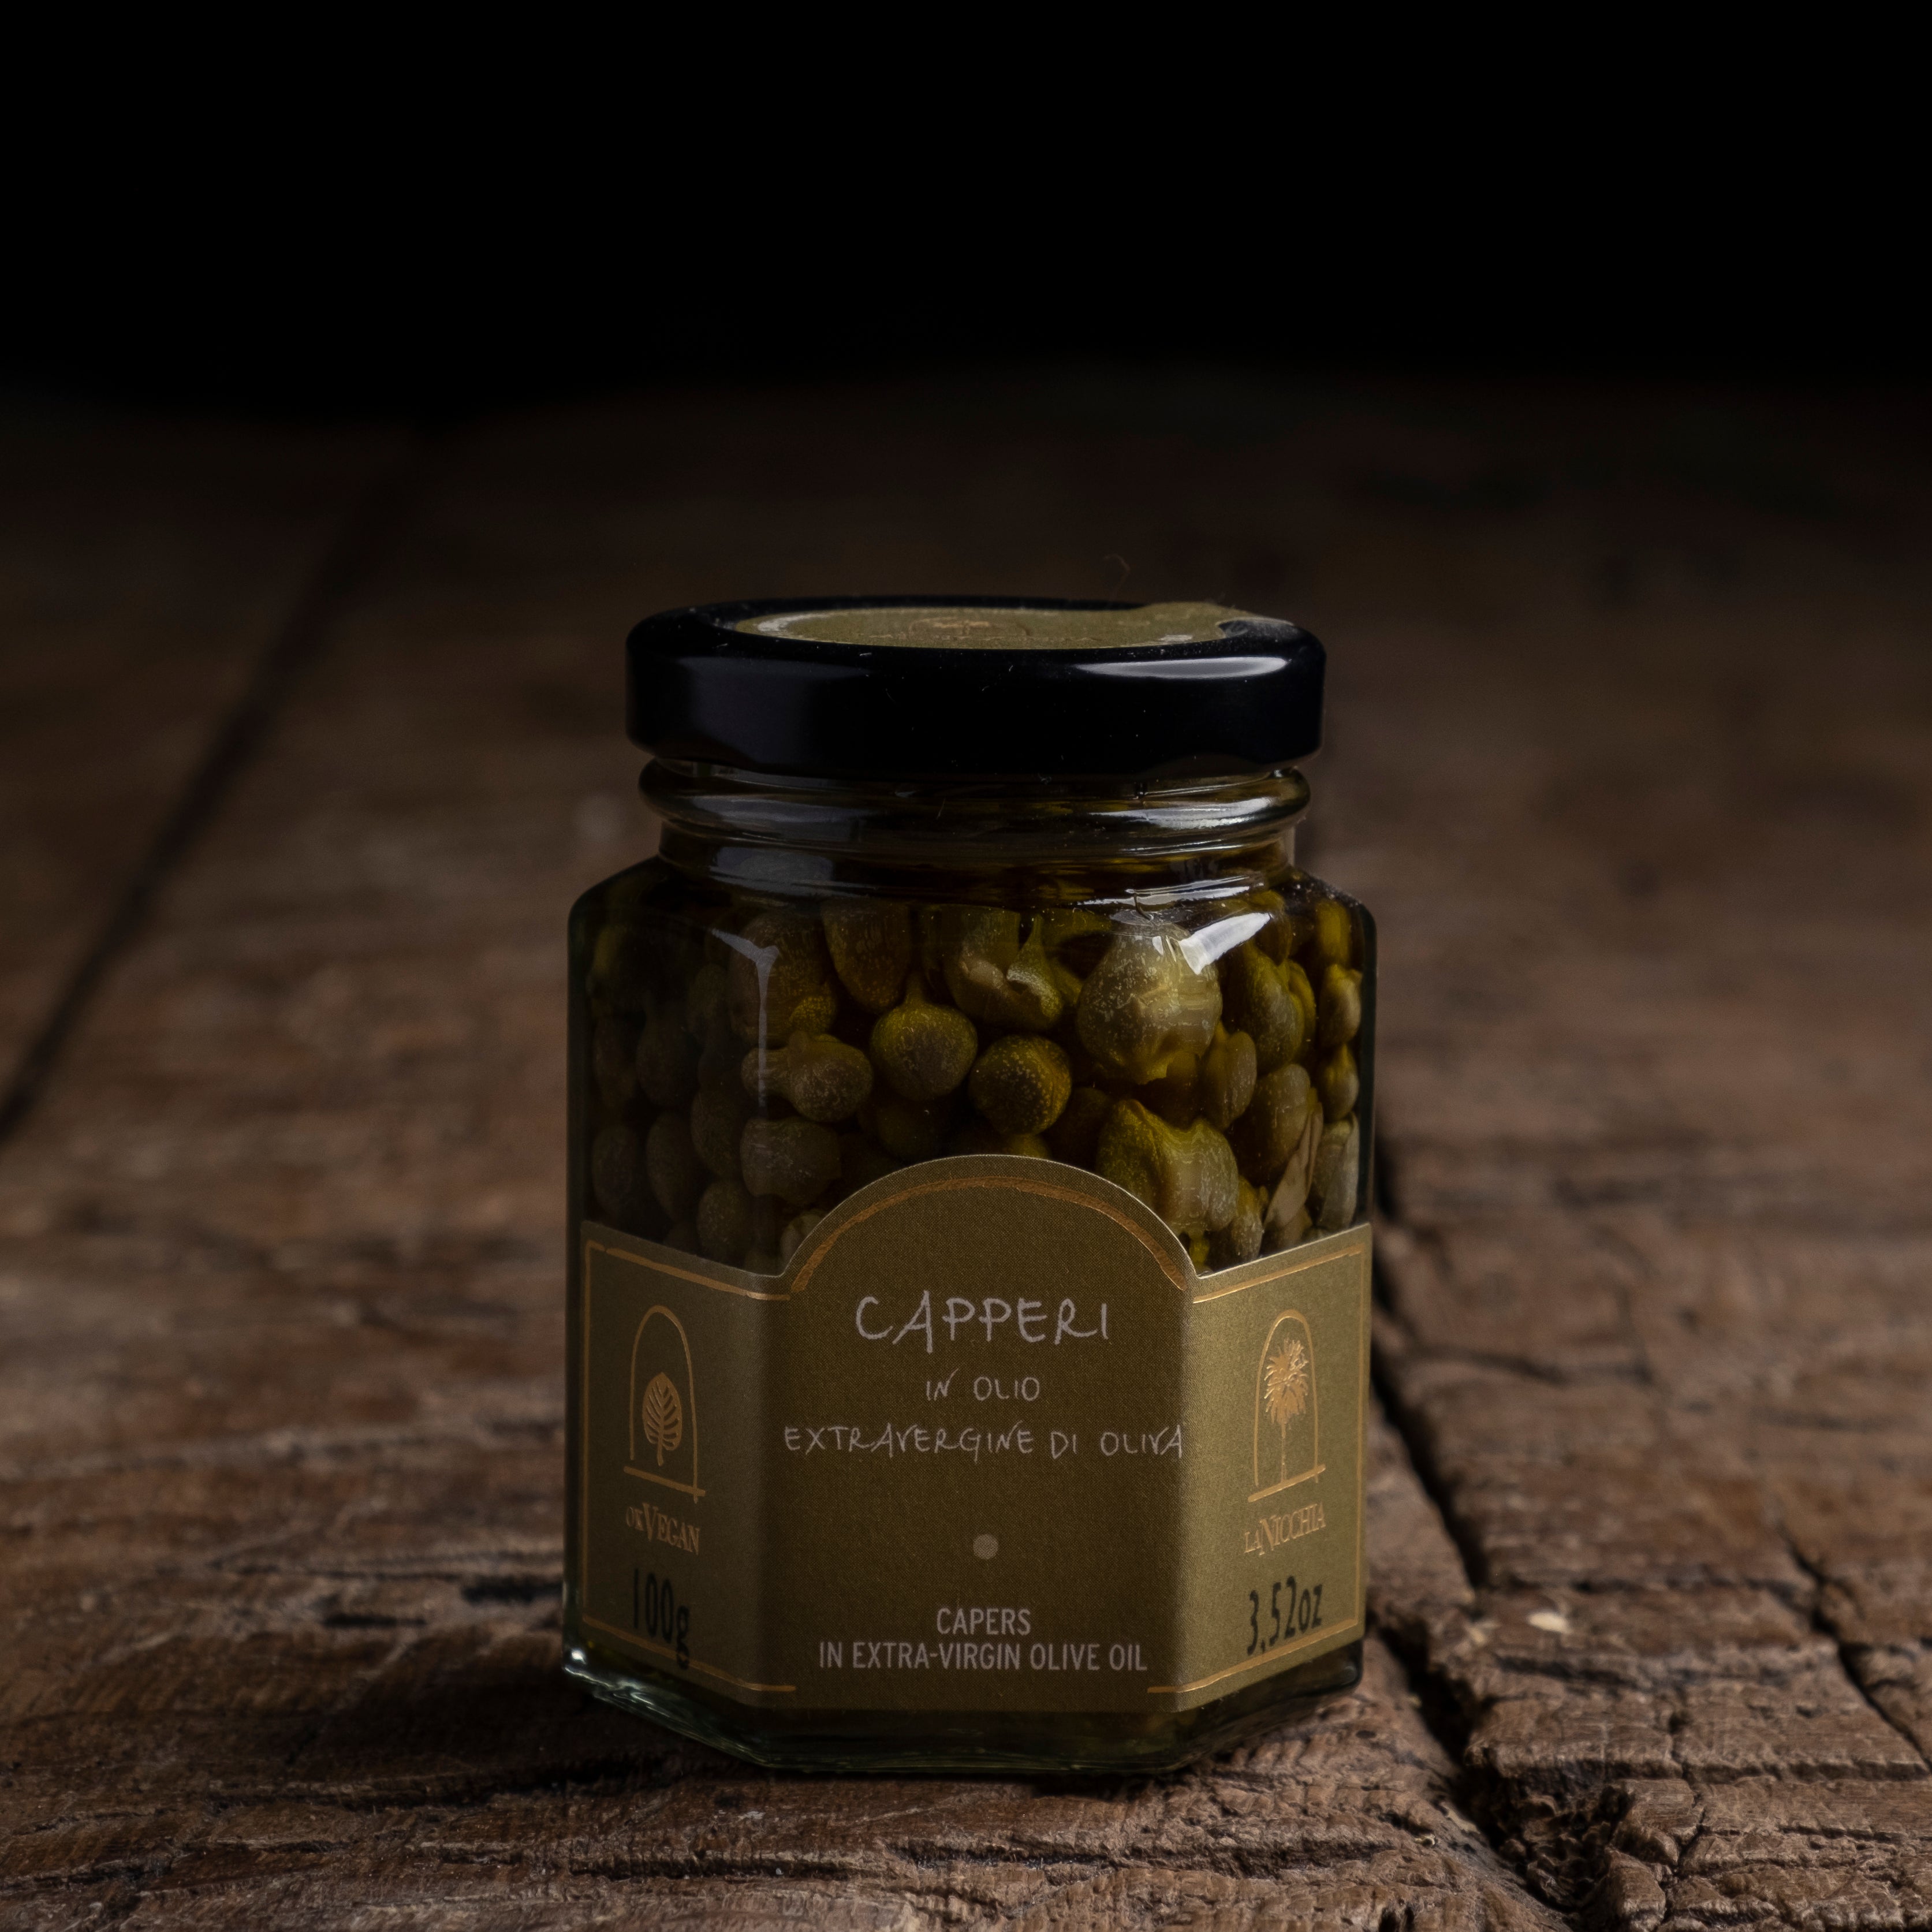 Kappers (klein formaat) op olijfolie EV uit Pantelleria - 100 gr